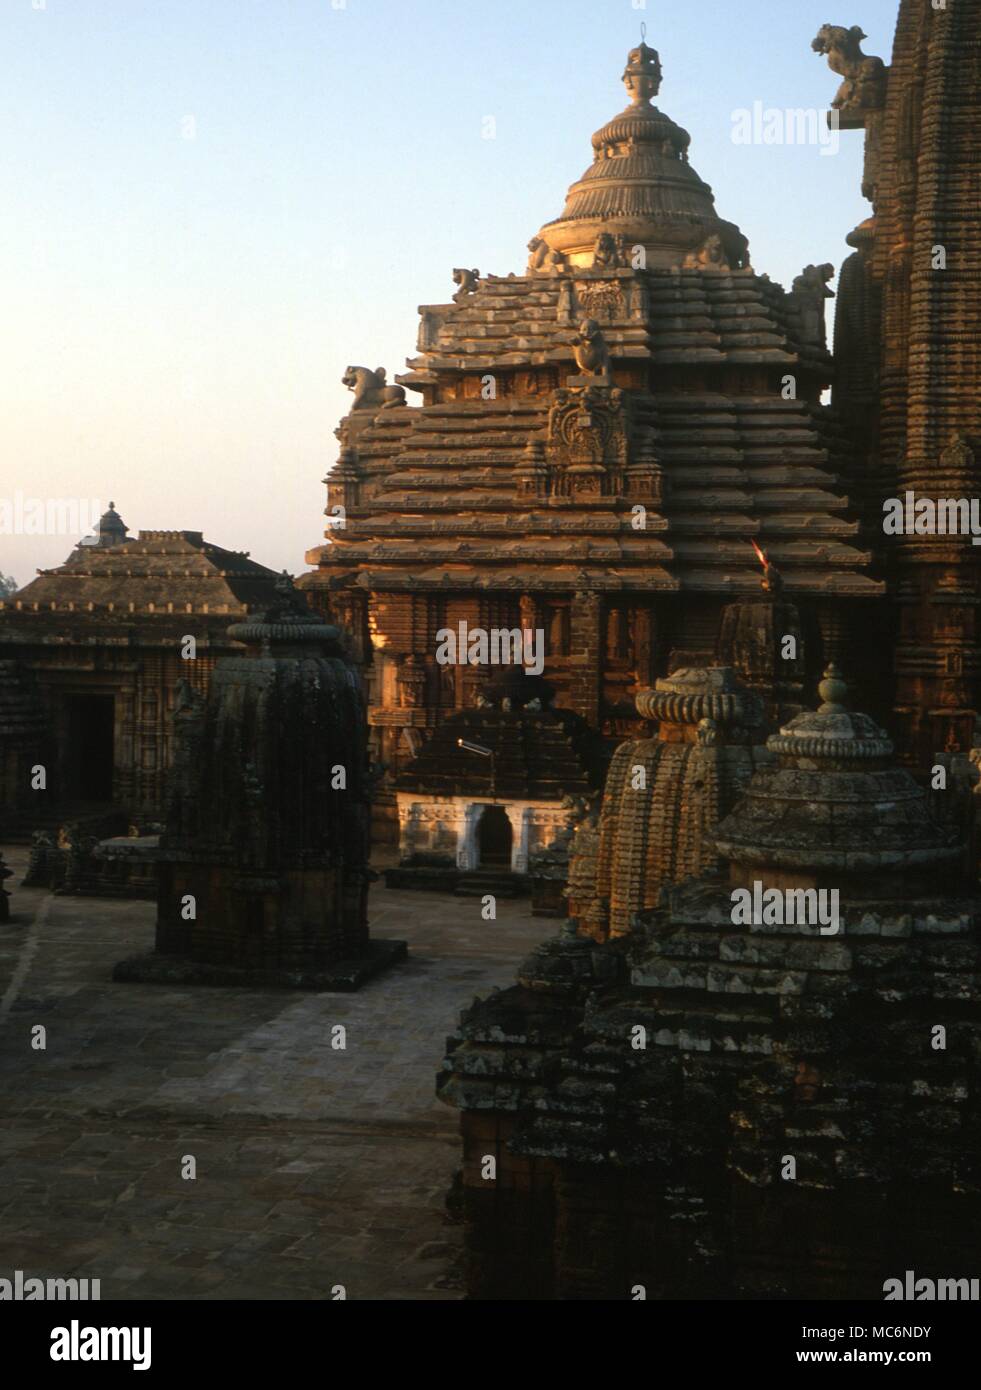 Sacred Indien Bhubaneswar im Großen Tempel Komplex der Lingaraj zu Trilbhuvaneswar Herr der drei Welten gewidmet und dating von 1104 AD Stockfoto